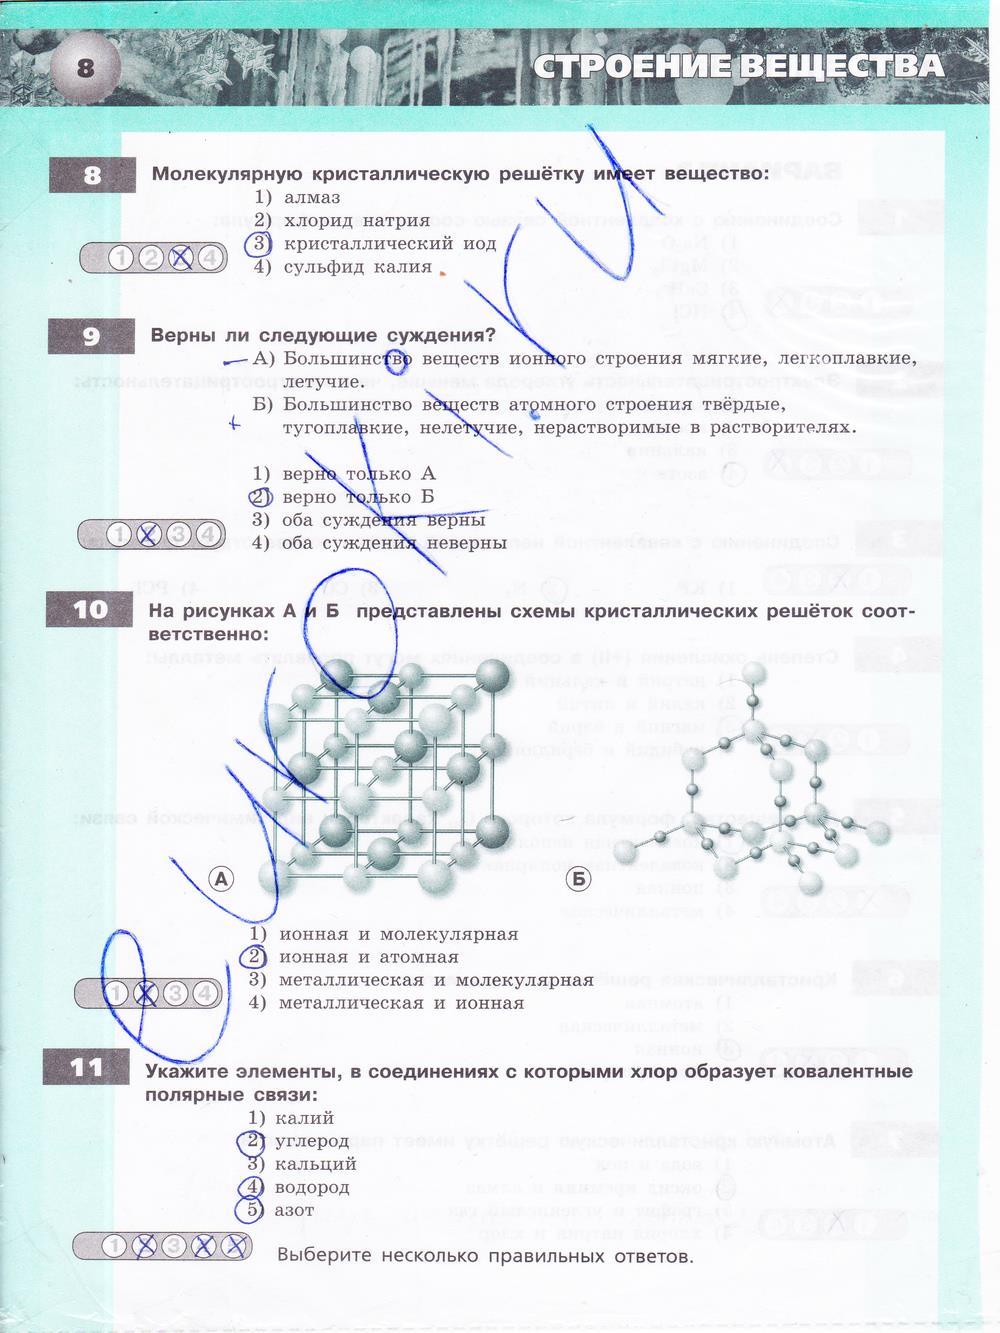 гдз 9 класс тетрадь-экзаменатор страница 8 химия Бобылева, Бирюлина